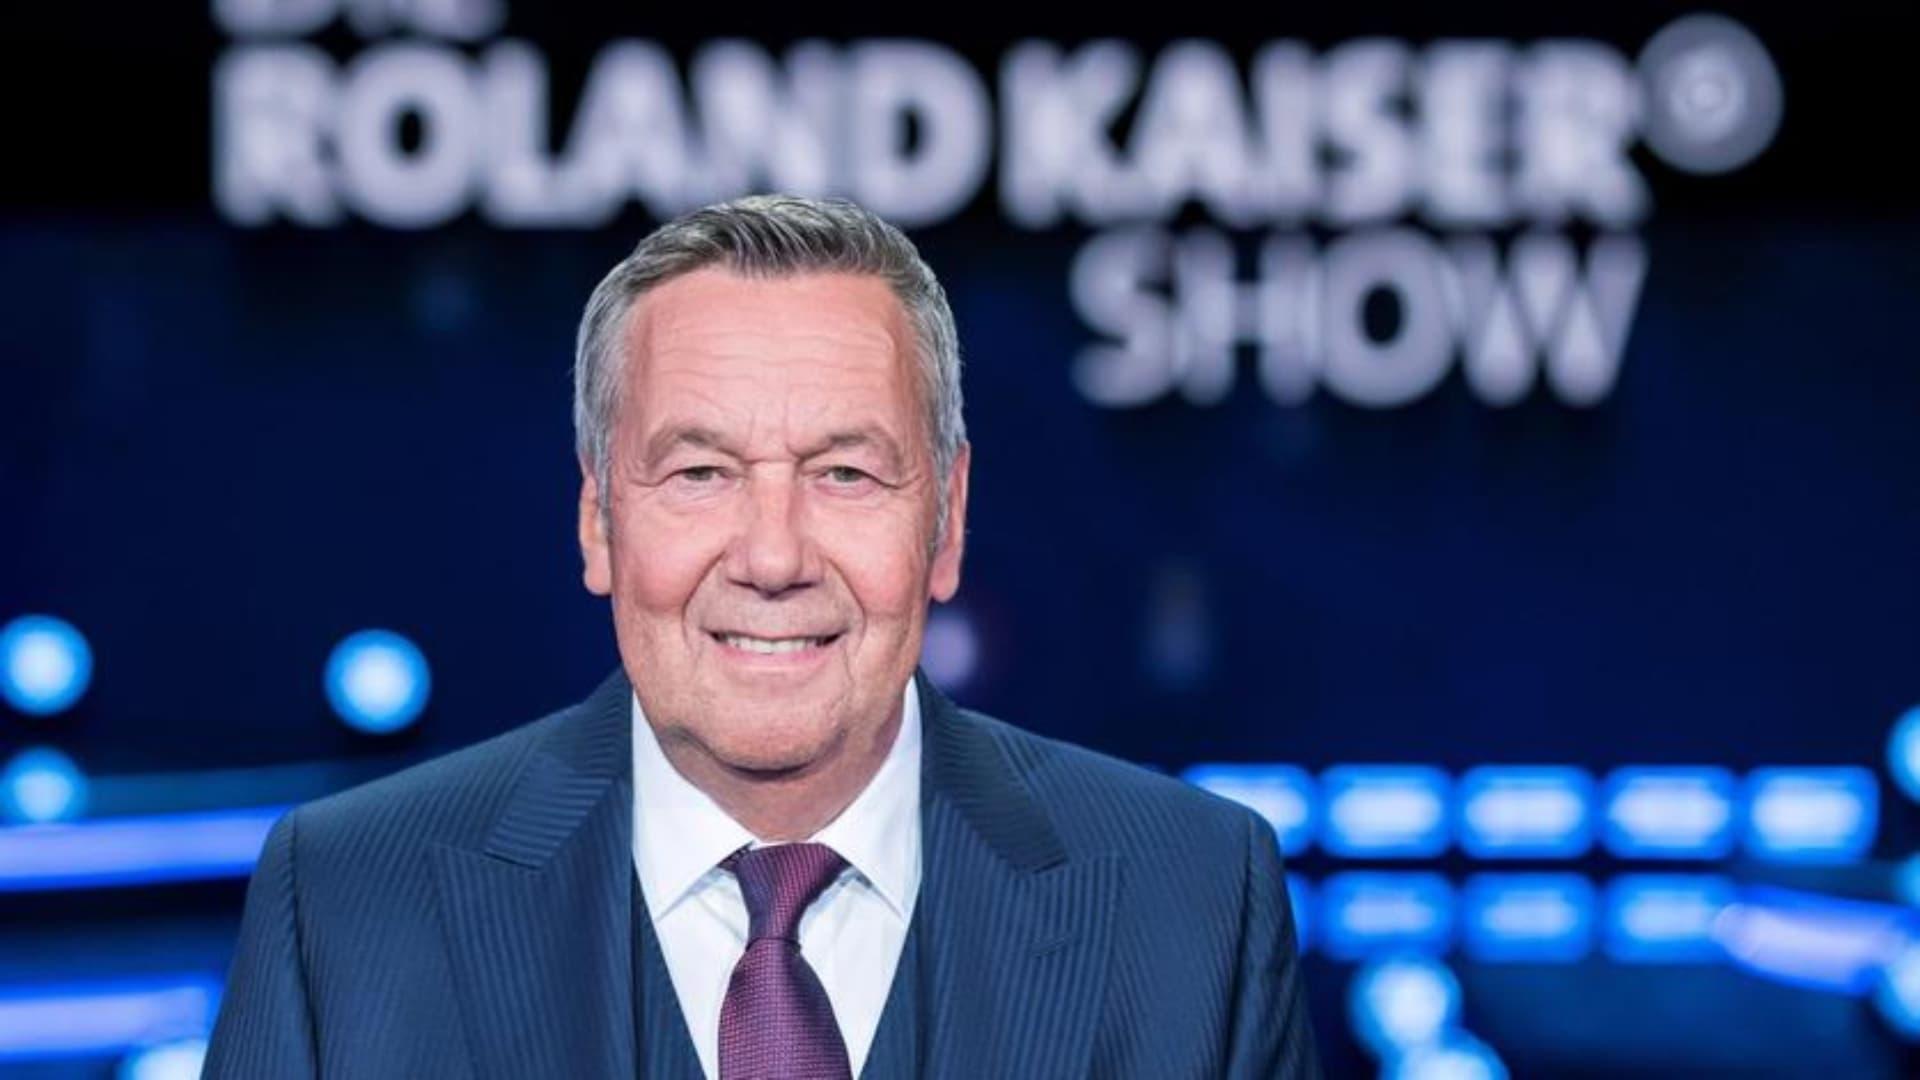 Die Roland Kaiser Show: Liebe kann uns retten backdrop